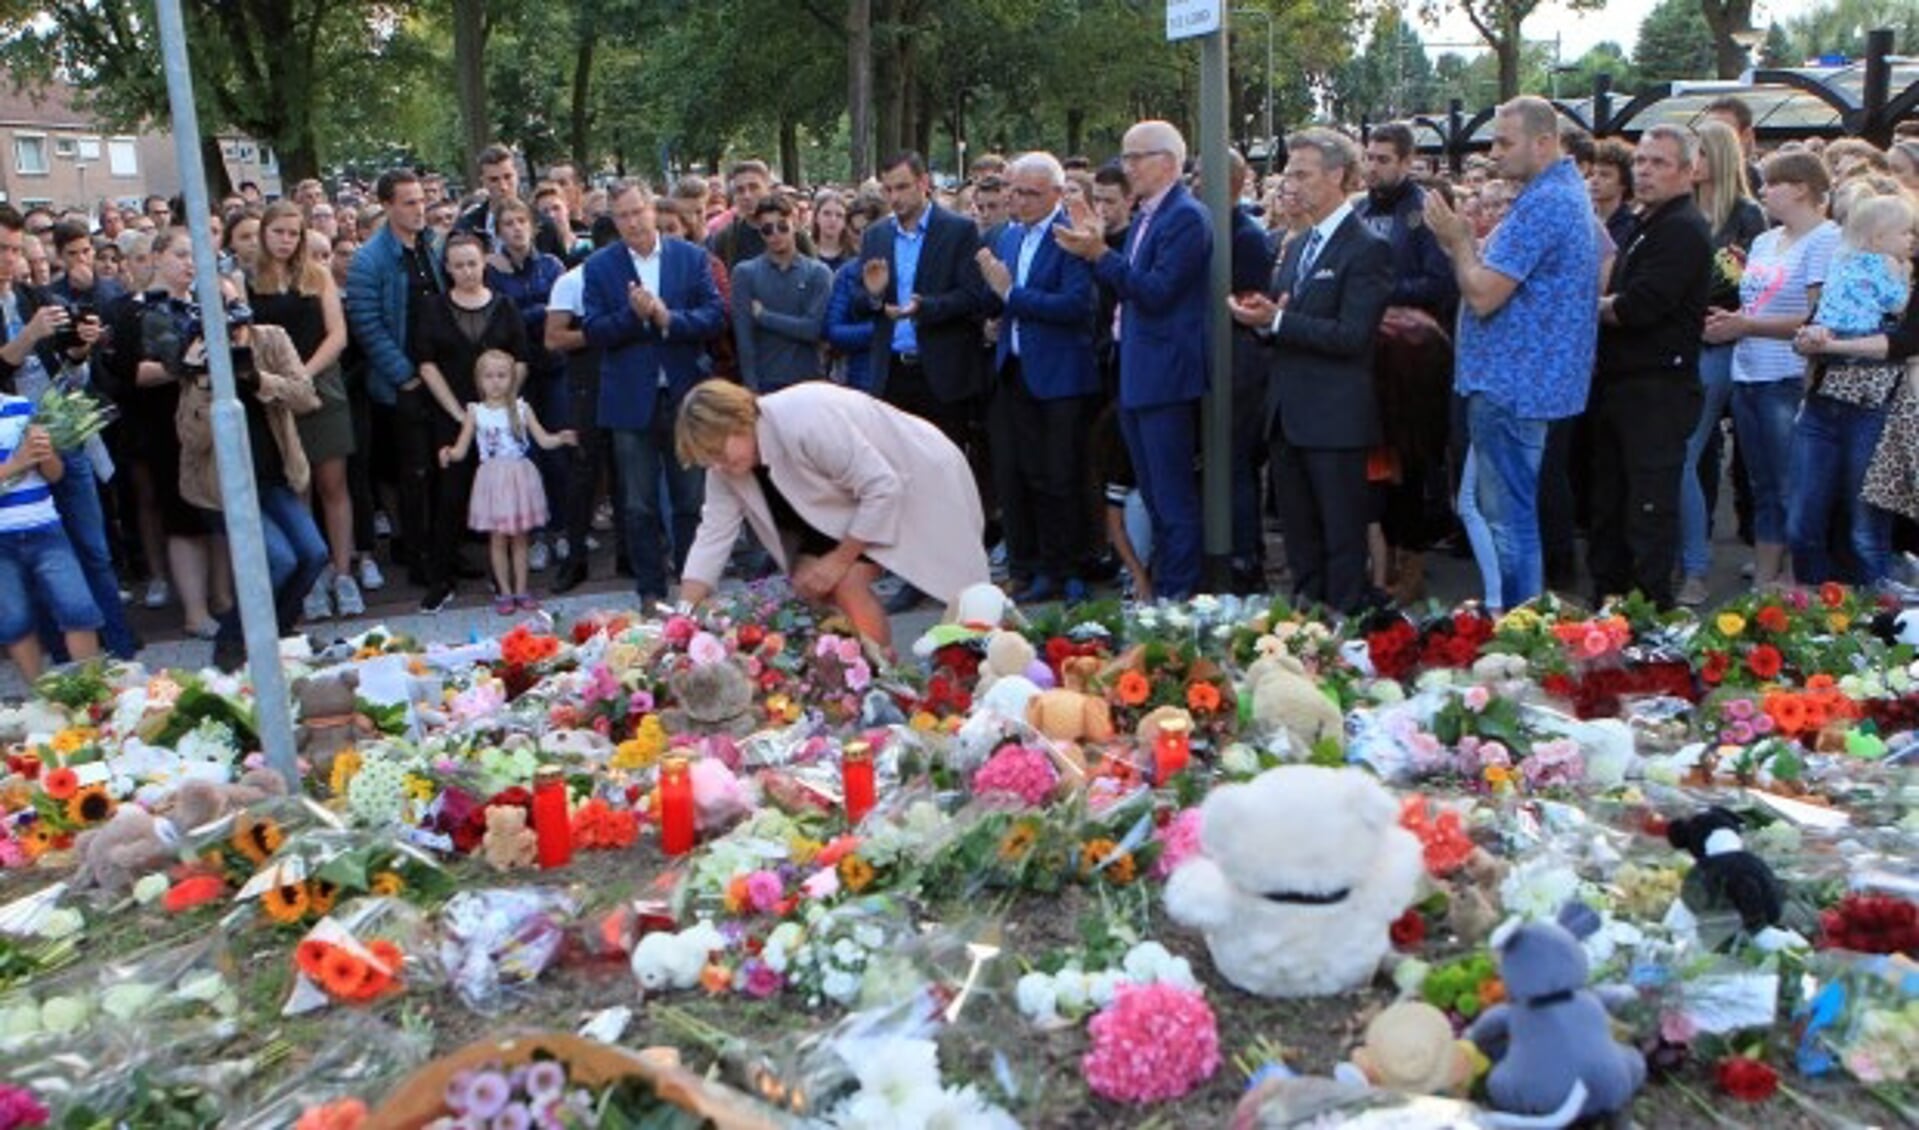 Burgemeester Wobine Buijs-Glaudemans legt bloemen neer op het gedenkveld. 